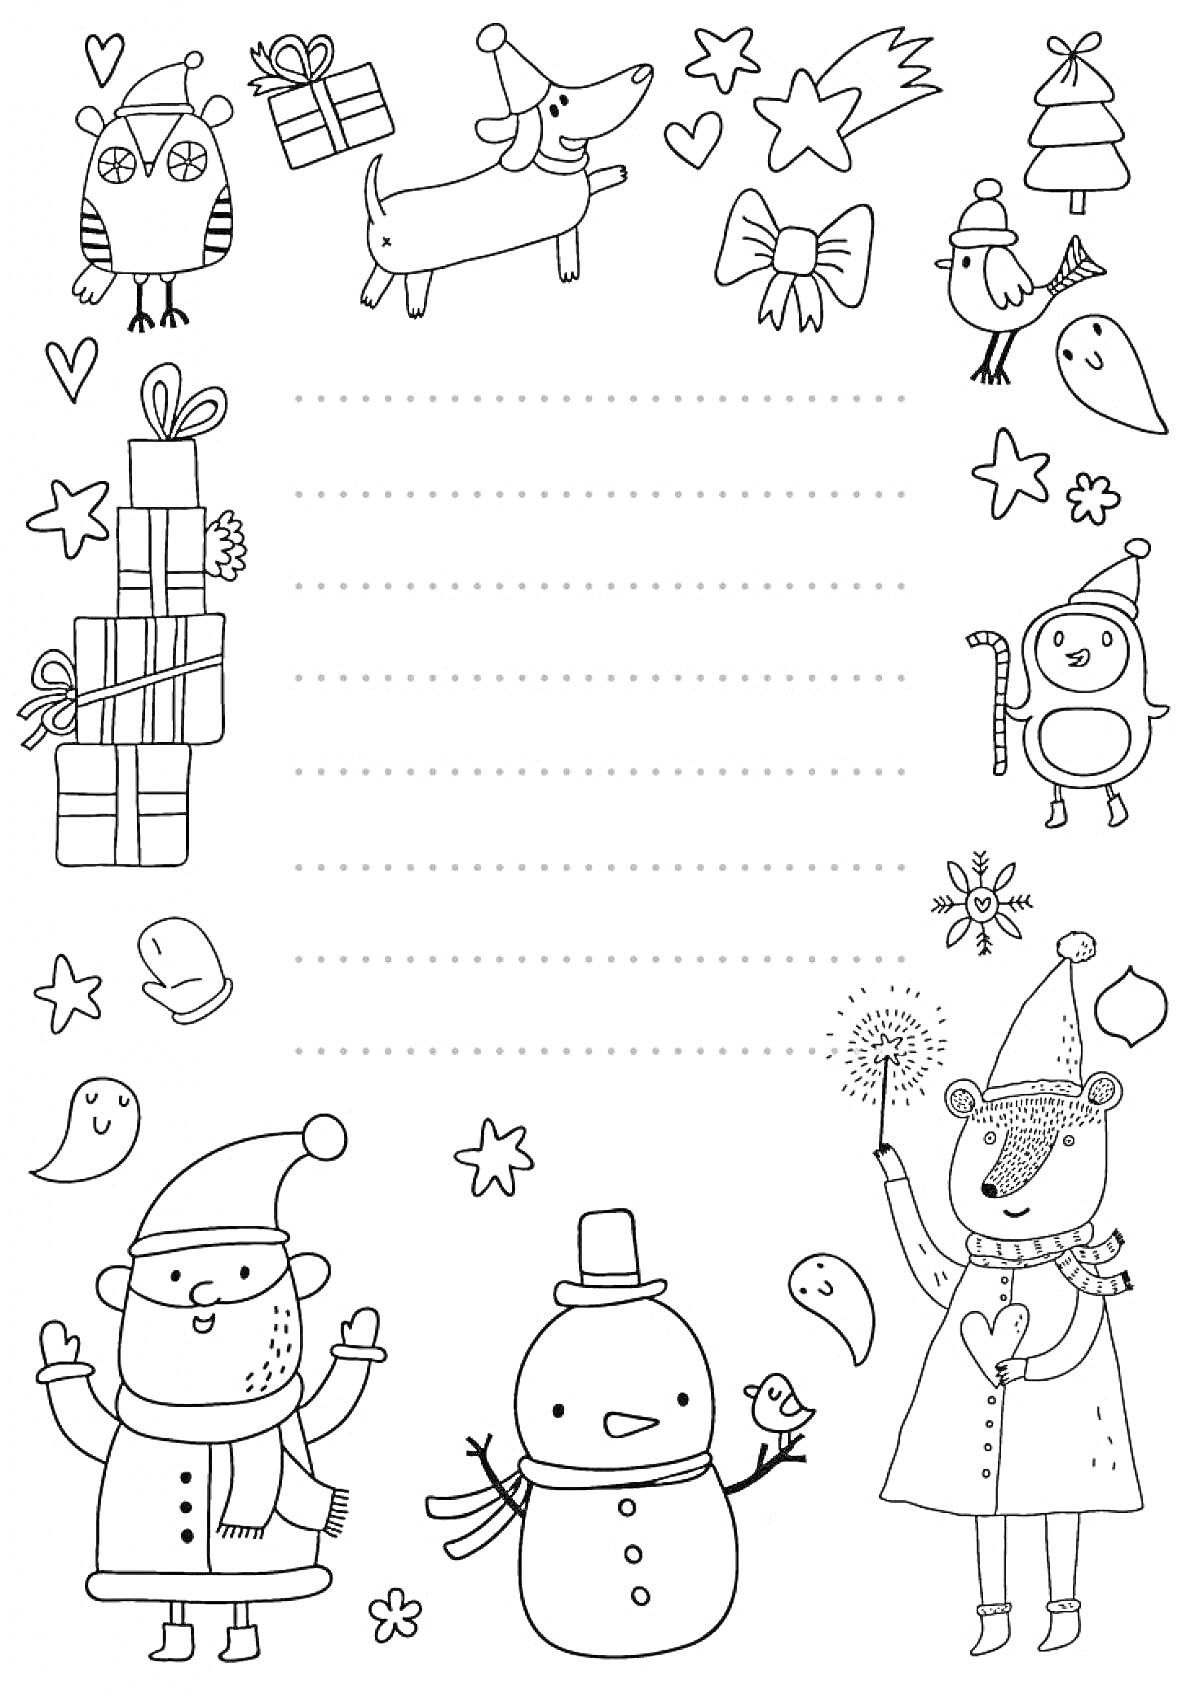 Раскраска Письмо Деду Морозу с подарками, совой, собакой, сердечками, звездой, елкой, птицей, снеговиком, новогодними персонажами и фигурками